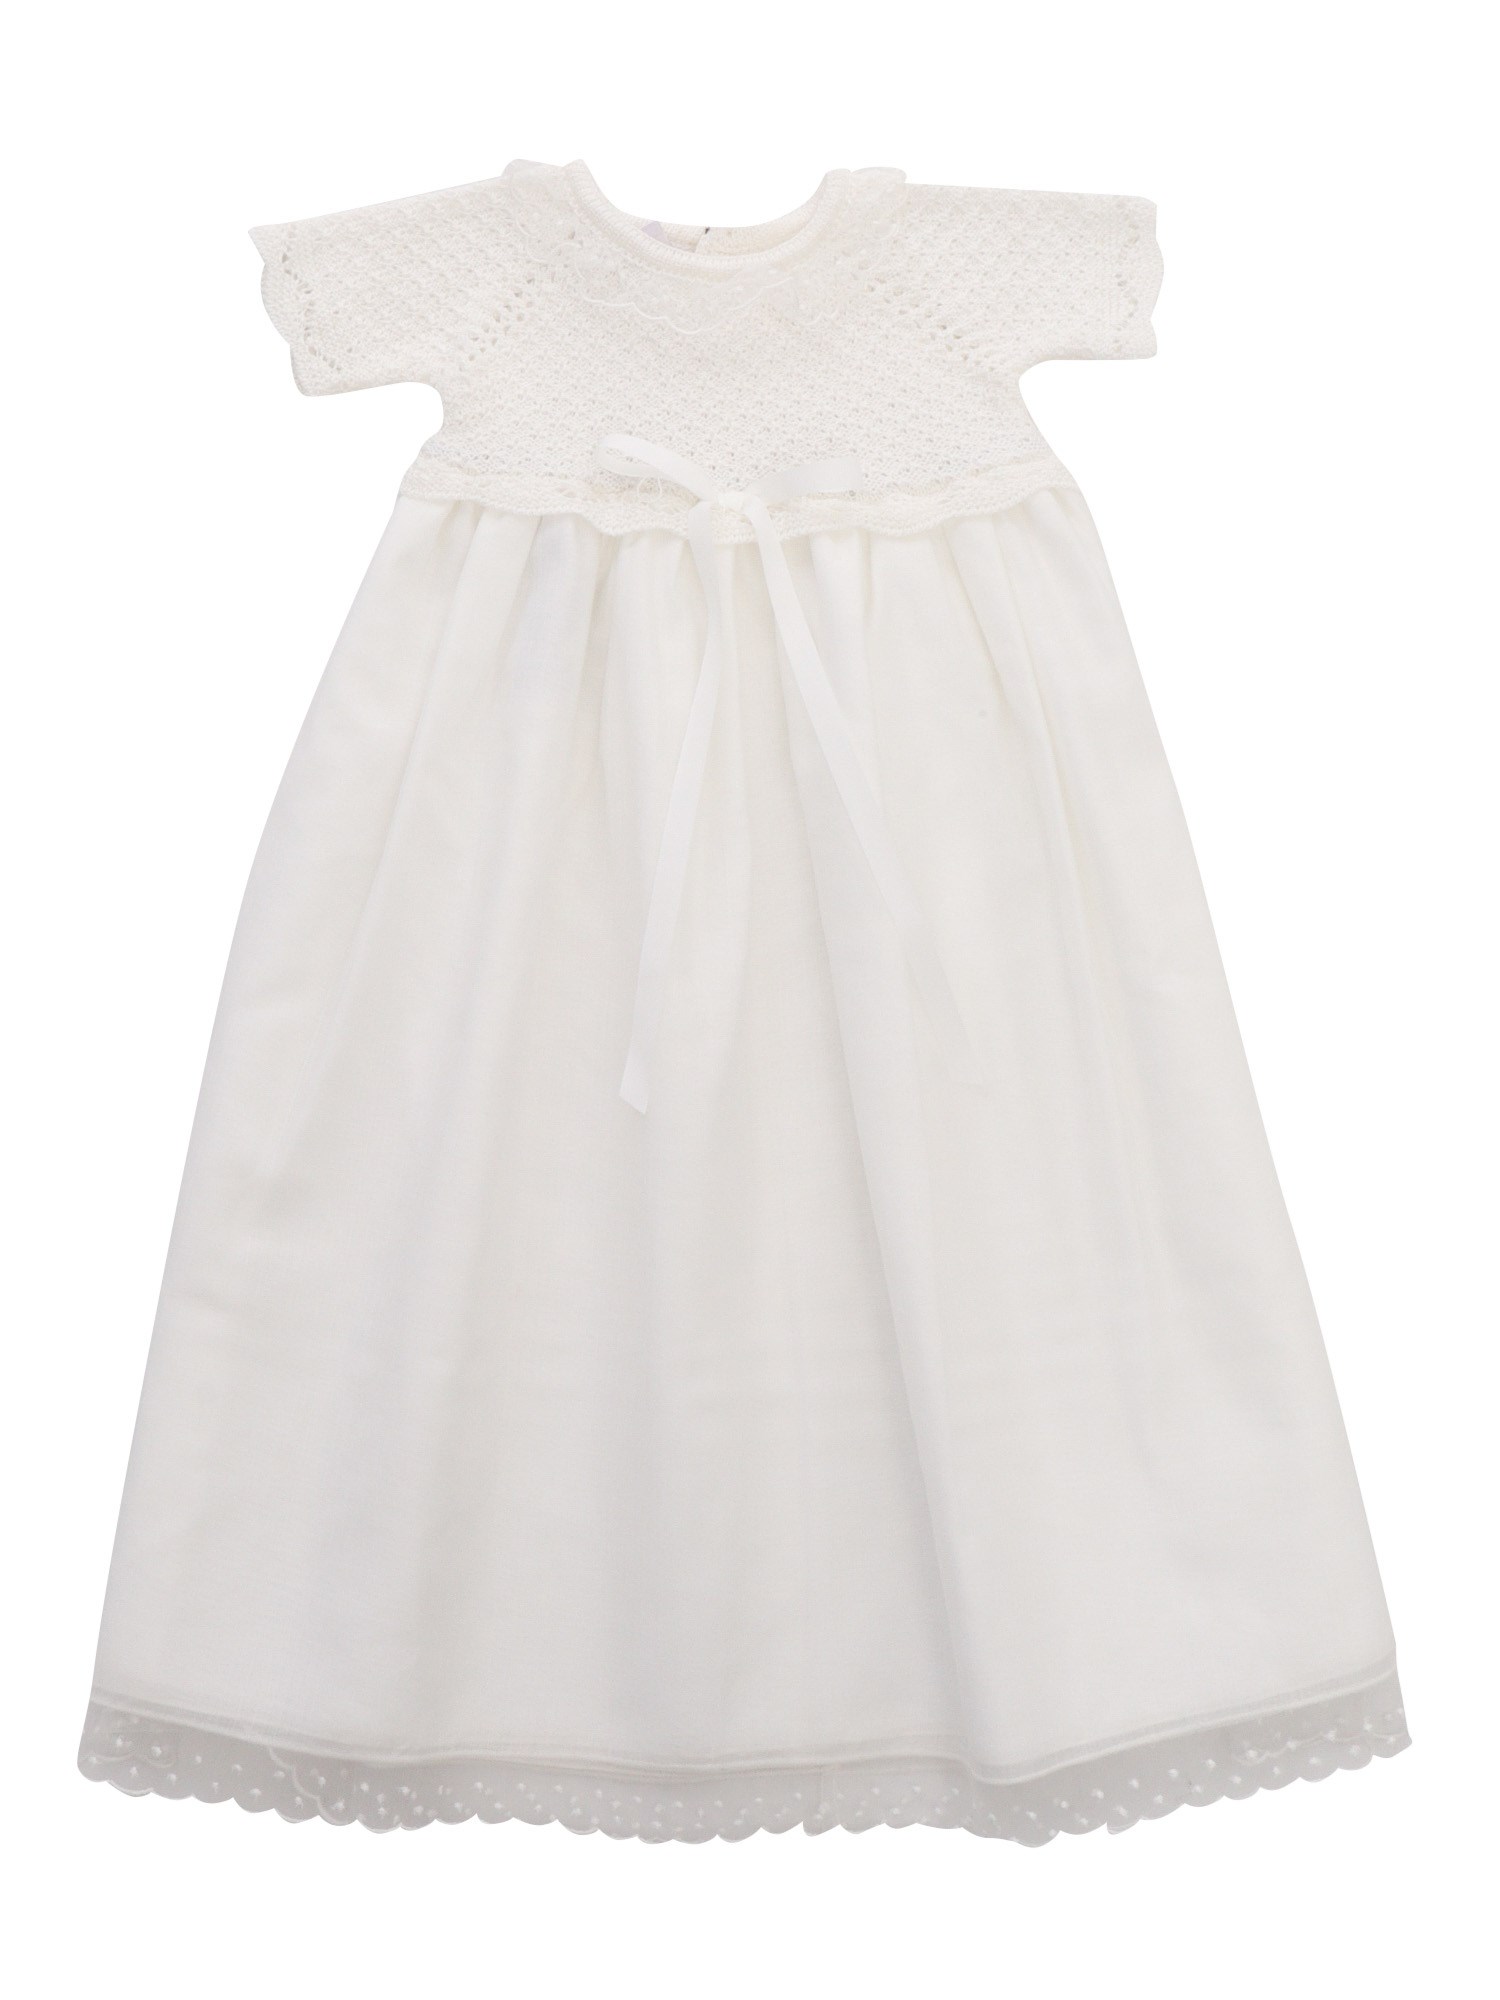 Shop Paz Rodriguez White Cotton Blend Dress